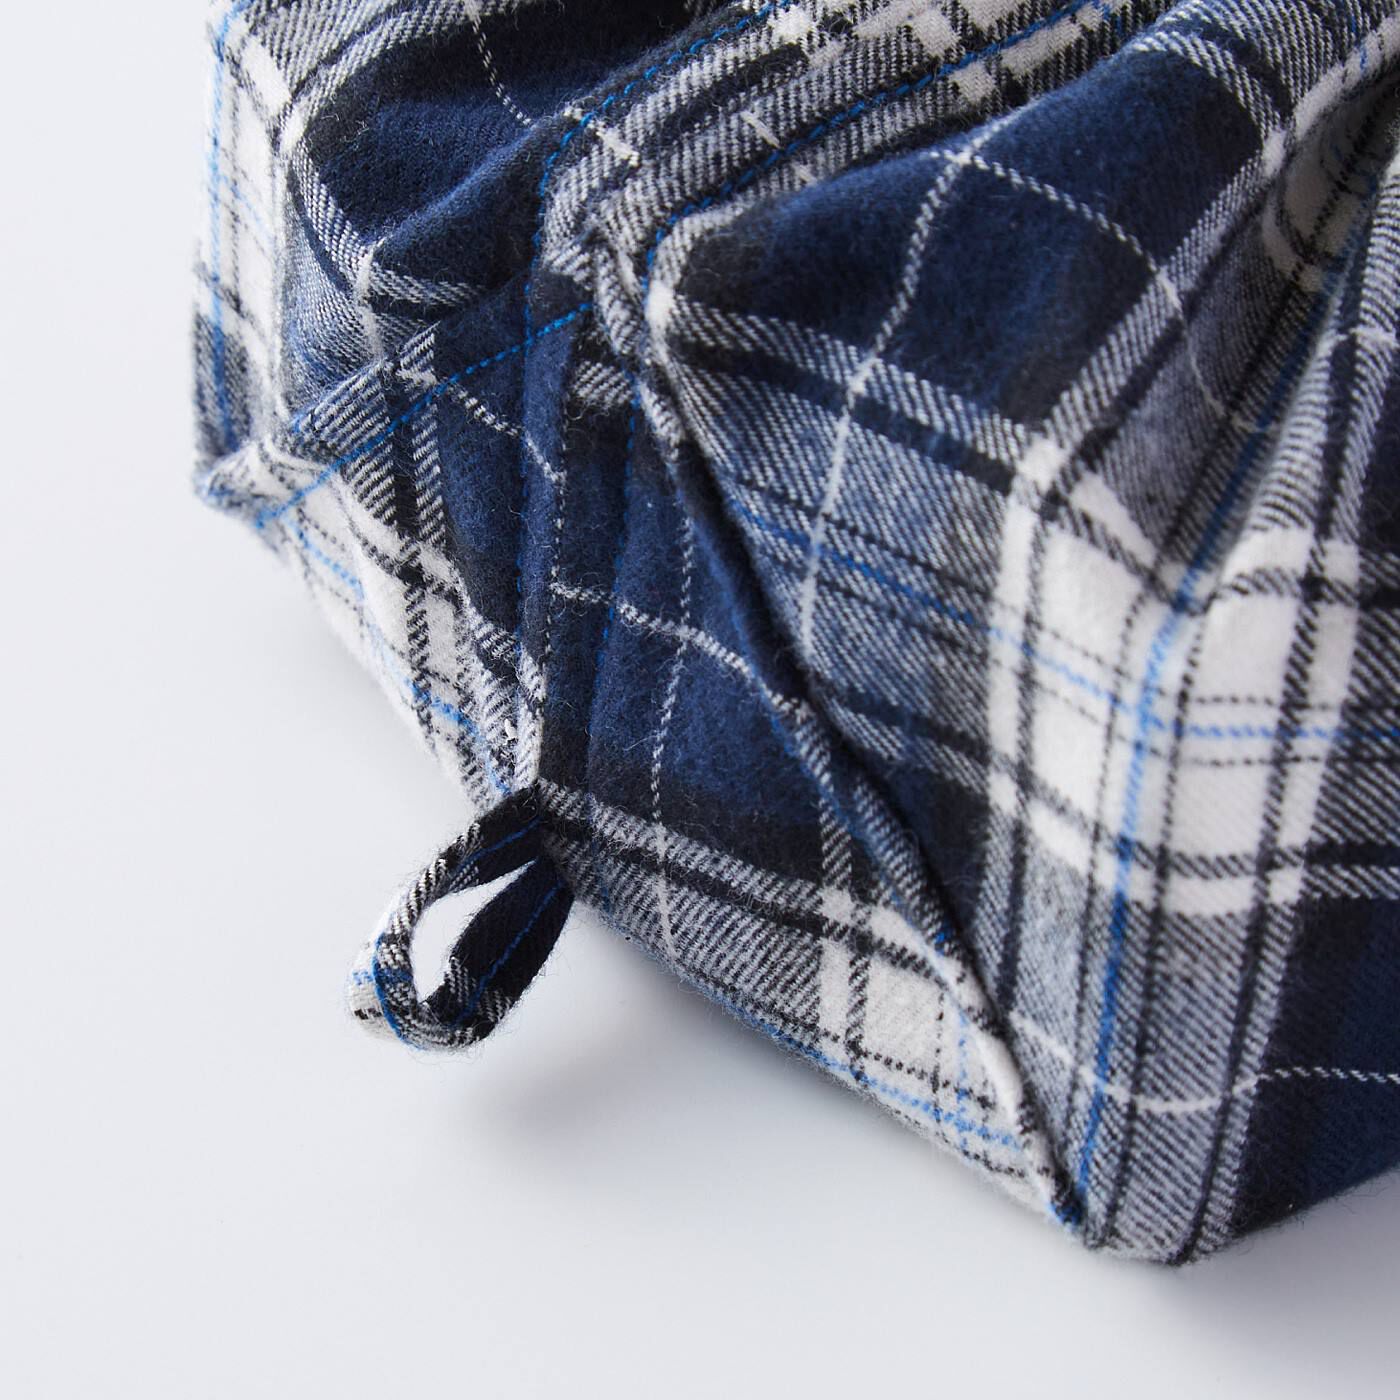 Real Stock|ボックスティッシュカバーになる　播州織でつくったマルチ巾着（きんちゃく）|フックに引っ掛けてつり下げられるループ付き。